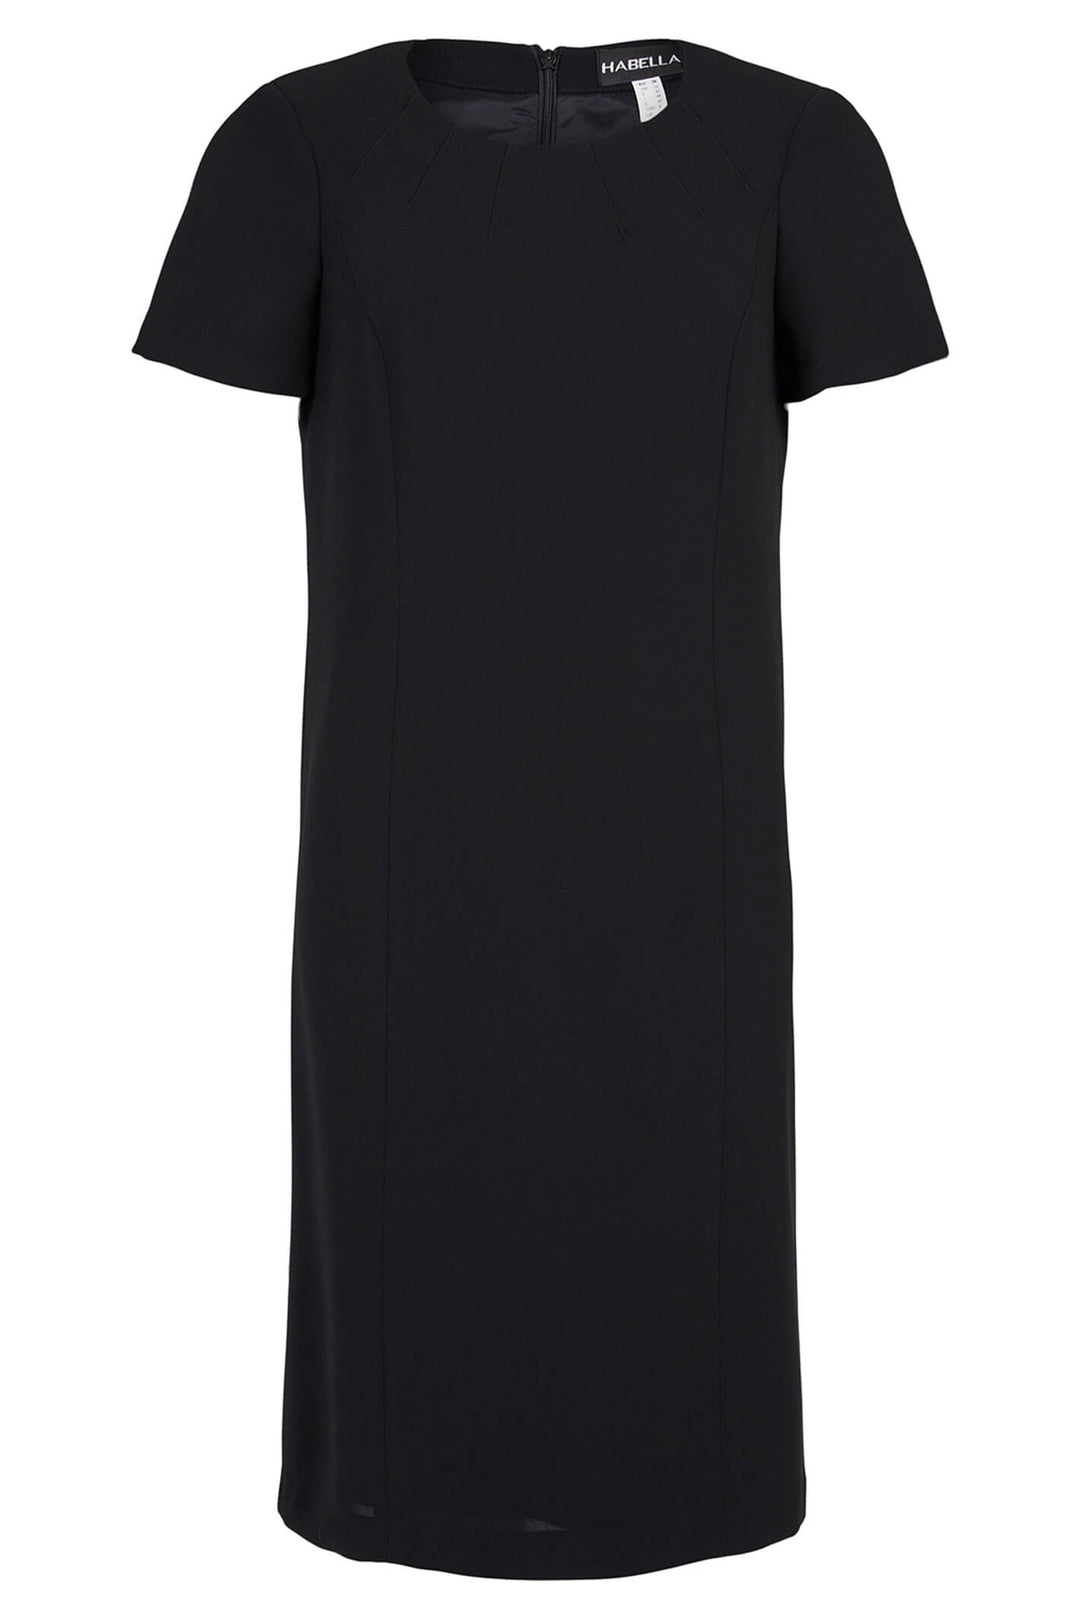 Habella 58008-5019-90 Black Short Sleeved Dress - Dotique